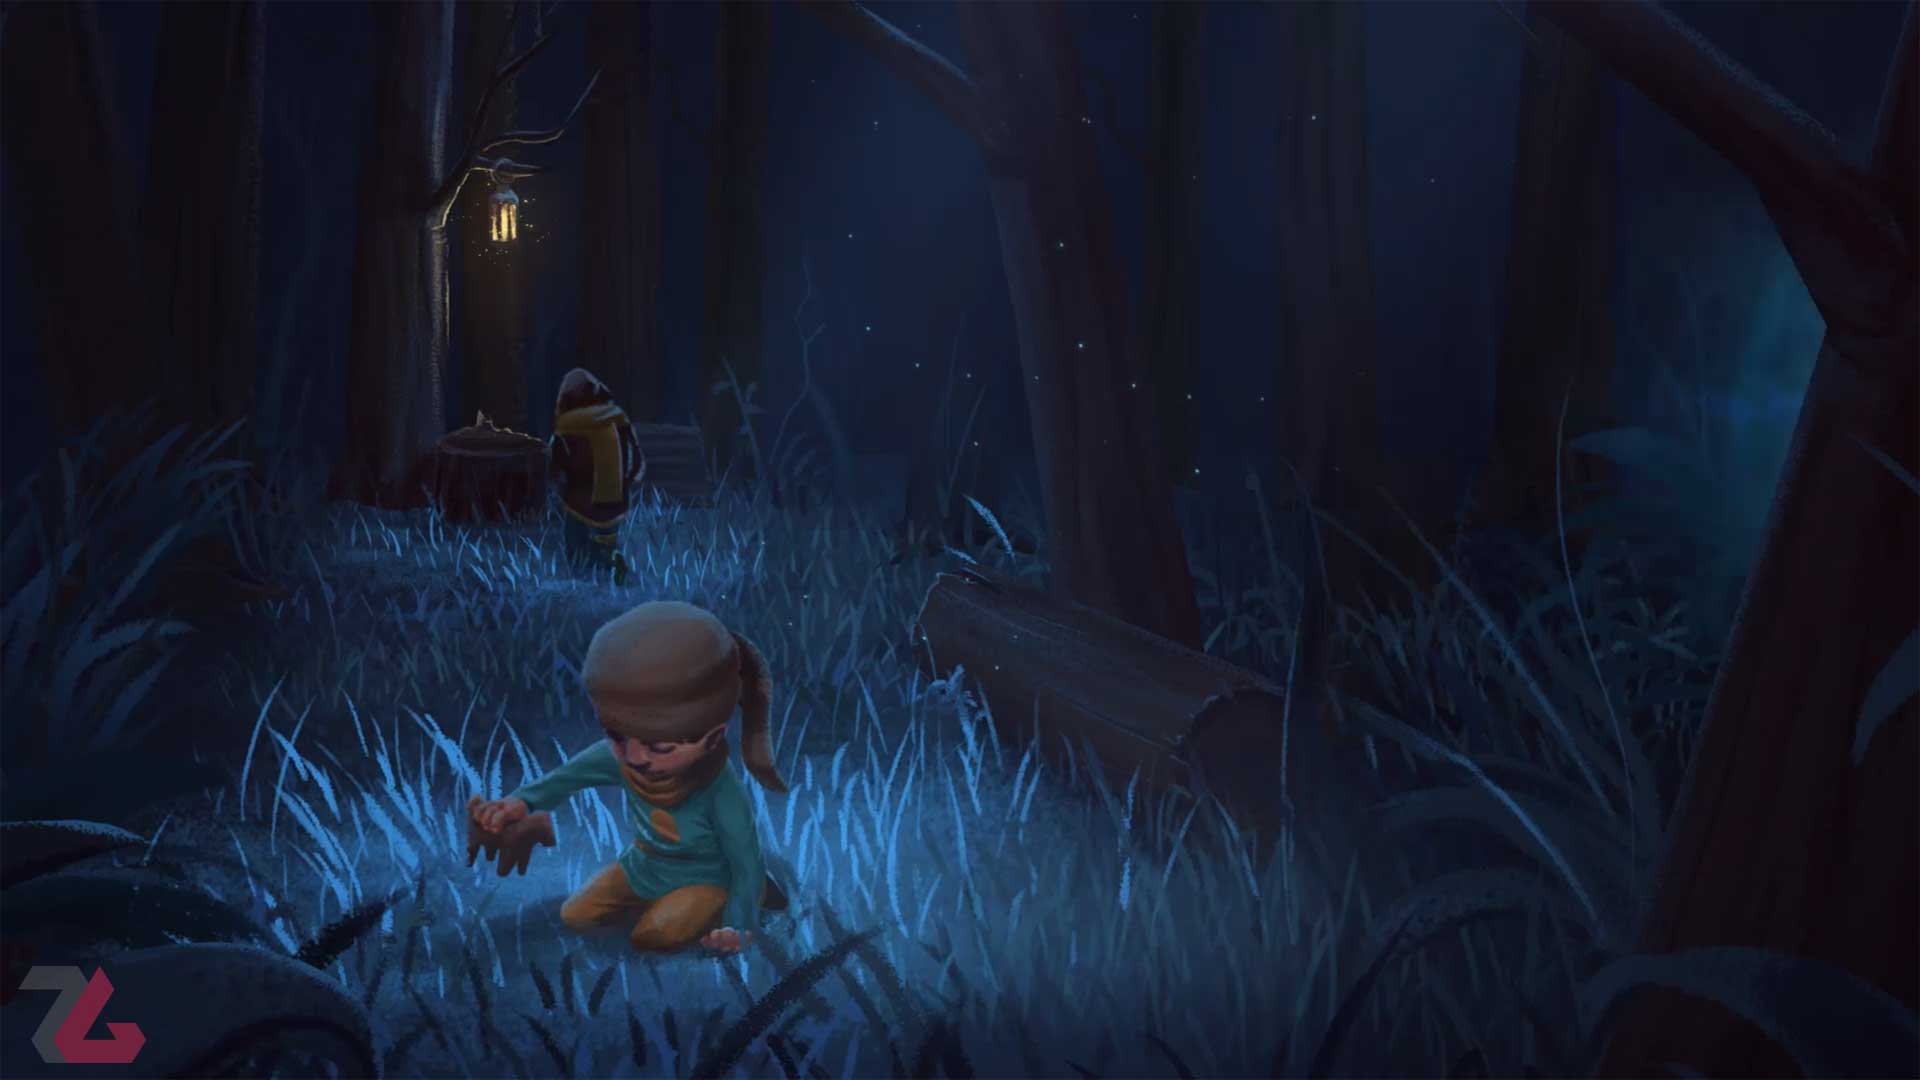 بررسی بازی Tetragon و پدر در جنگل تاریک با فرزند کوچک